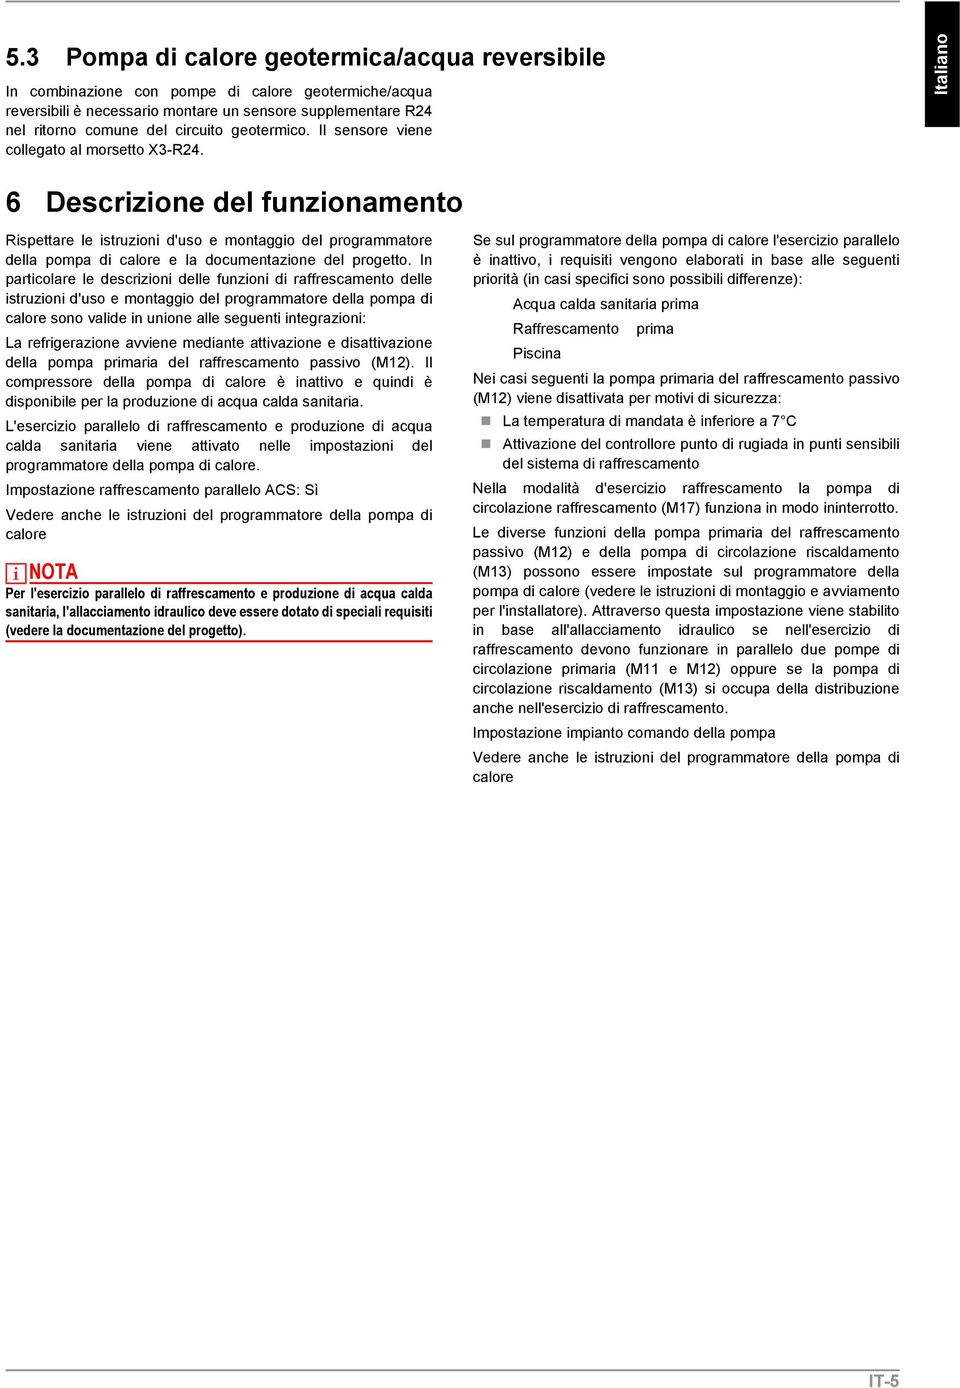 Italiano 6 Descrizione del funzionamento Rispettare le istruzioni d'uso e montaggio del programmatore della pompa di calore e la documentazione del progetto.